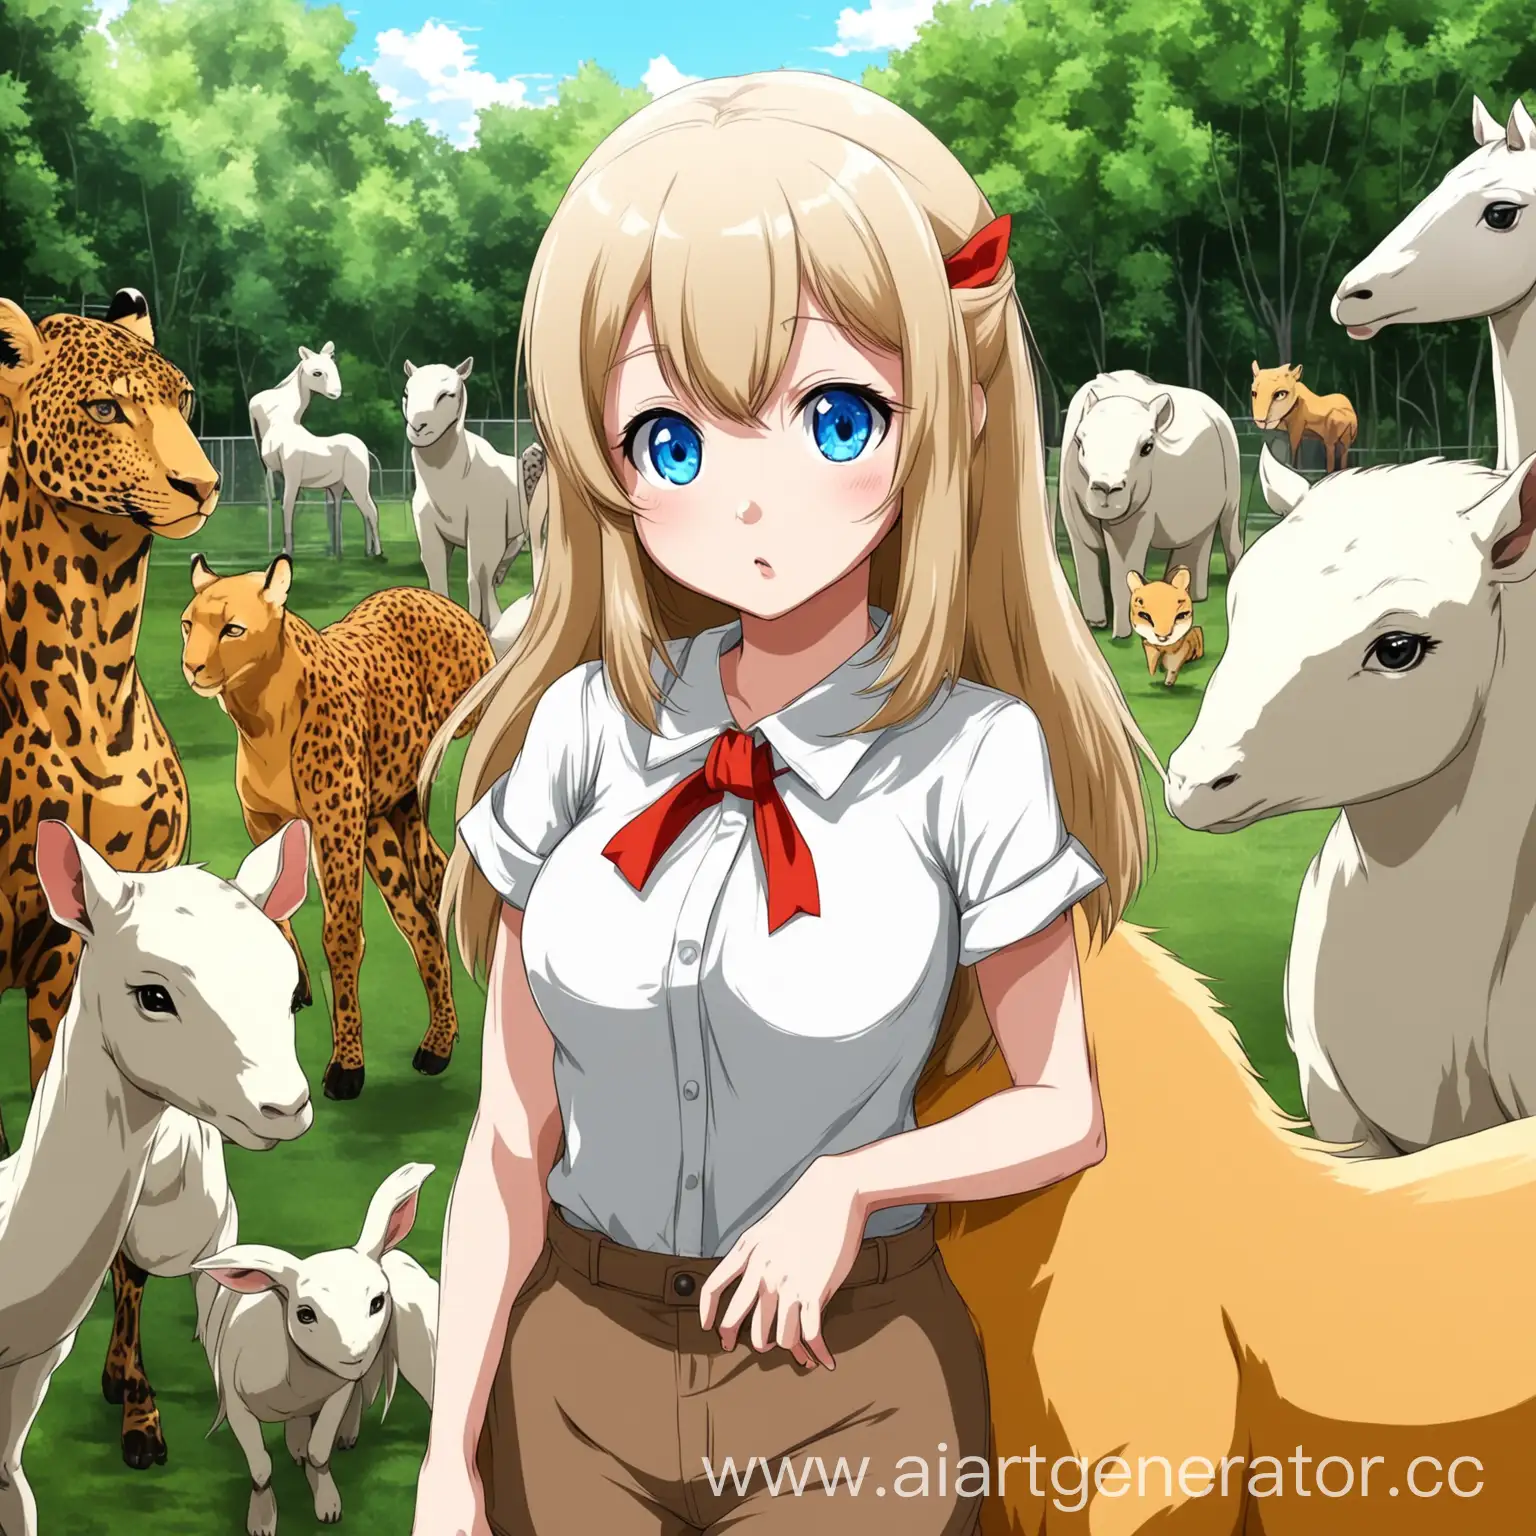 зоопарк с анимешными девочками вместо животных